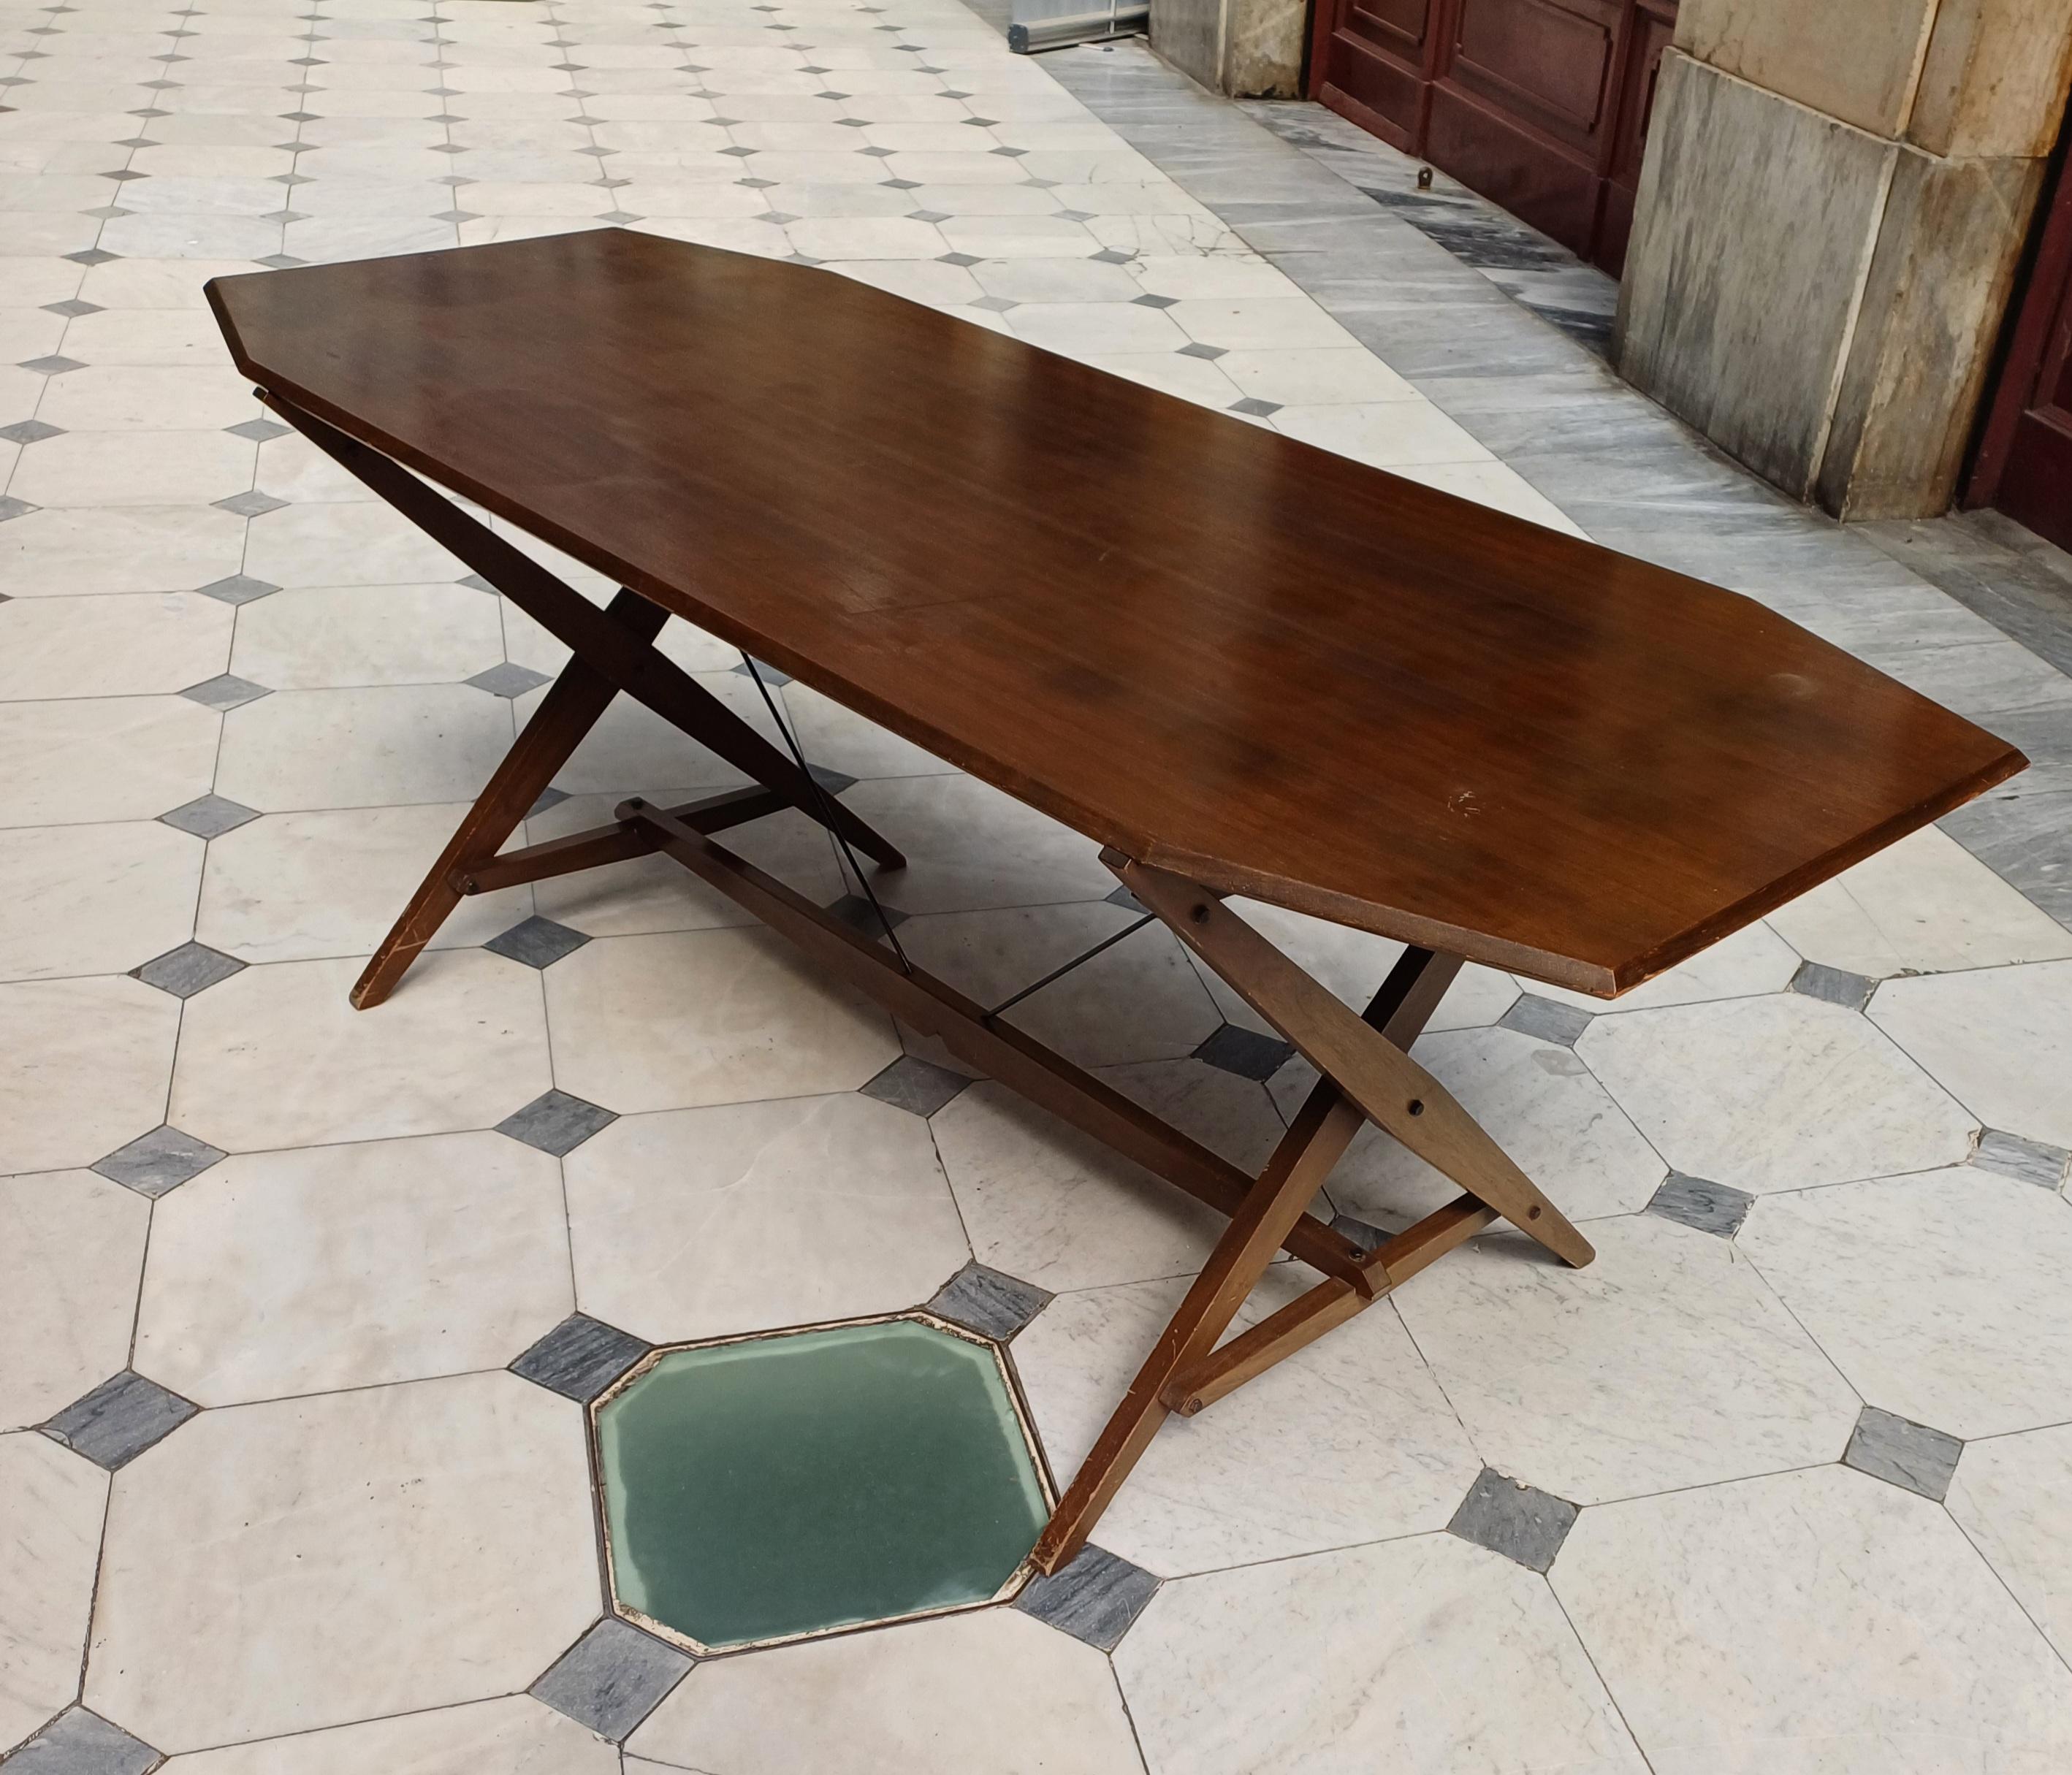 Tavolo da pranzo / scrivania modello Cavaletto TL2 progettato da Franco Albini e prodotto da Poggi Italia. Disegnato nel 1950 per il produttore Poggi, il Cavaletto può essere utilizzato sia come tavolo che come scrivania. L'attenzione ai dettagli di